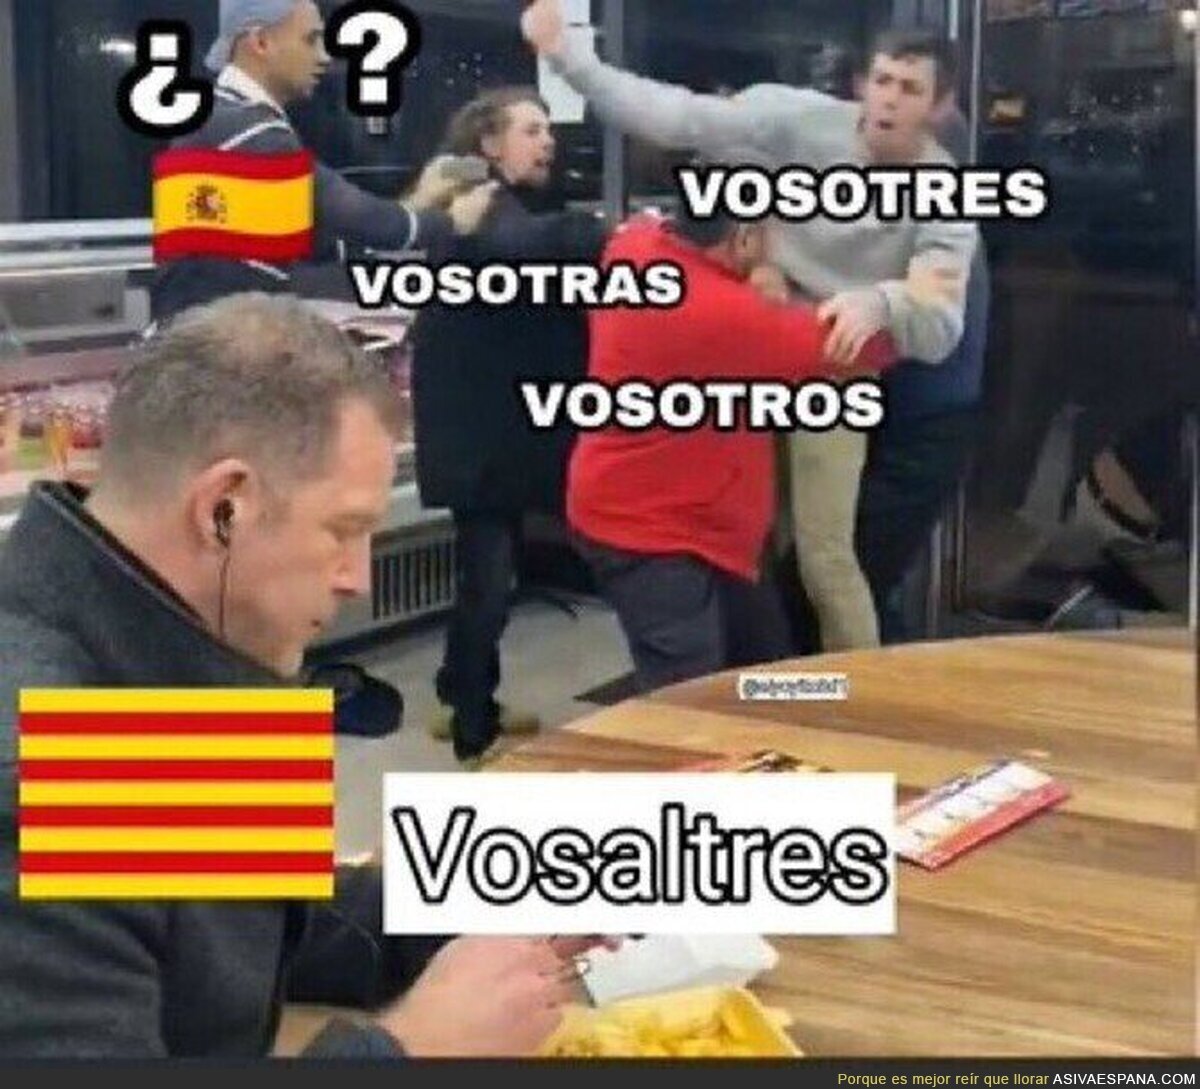 Visca la llengua catalana